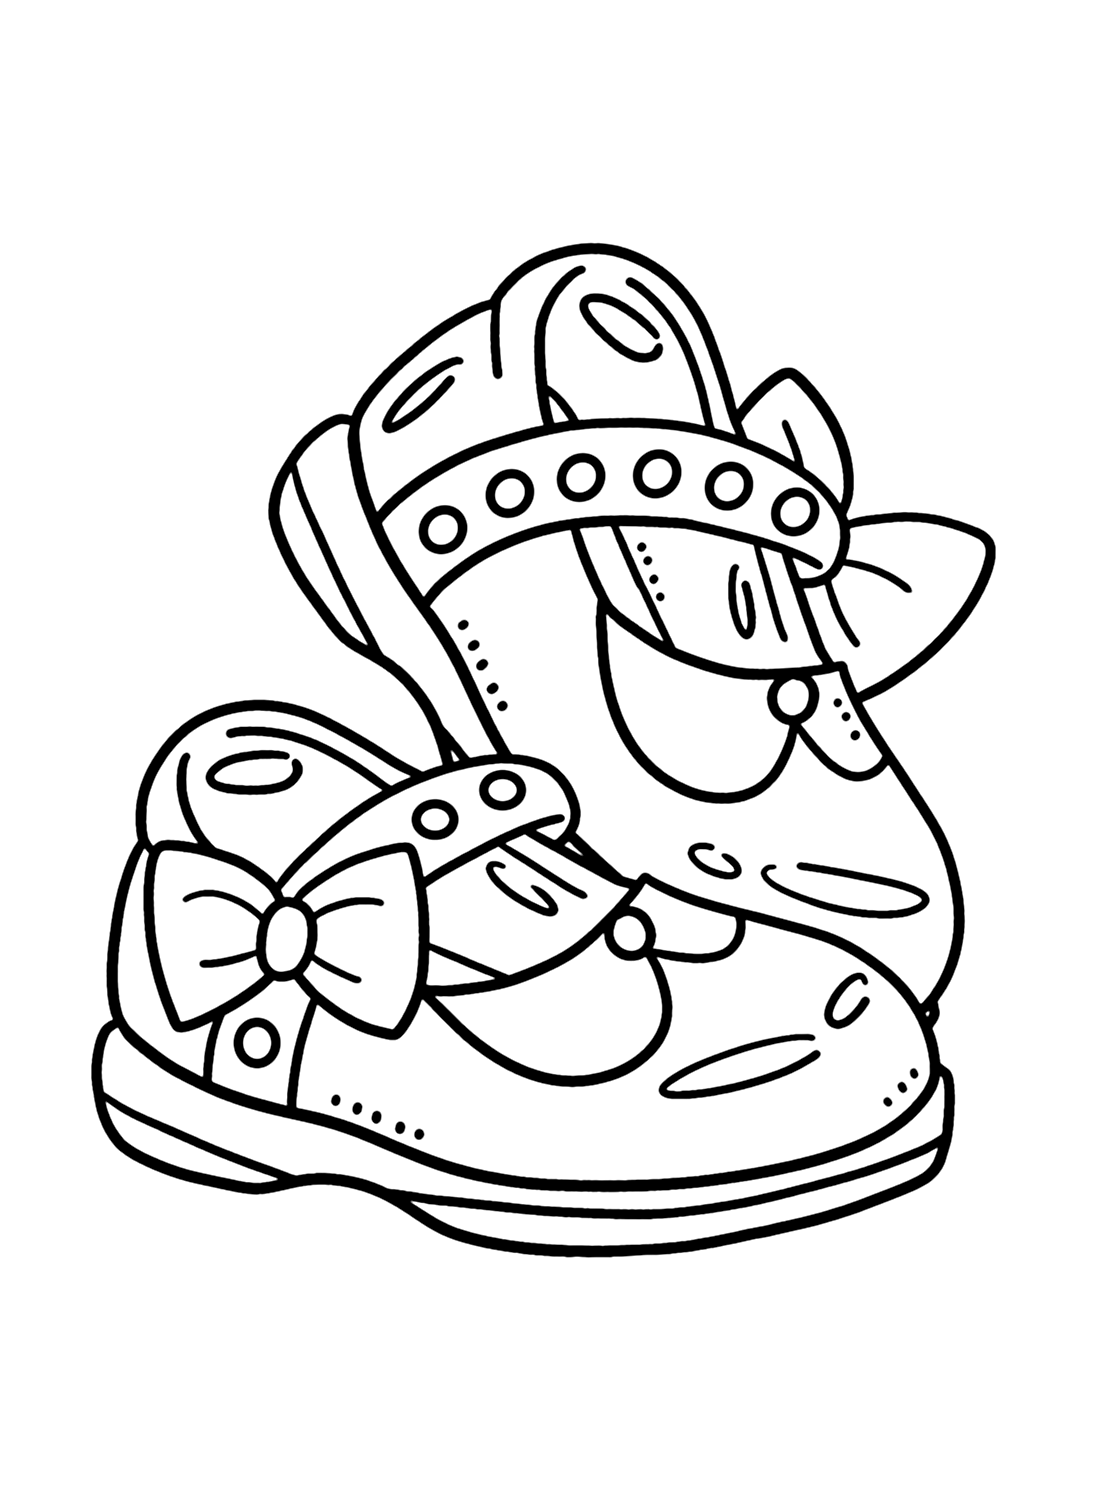 Página para colorear de zapatos de bebé niña de Shoe